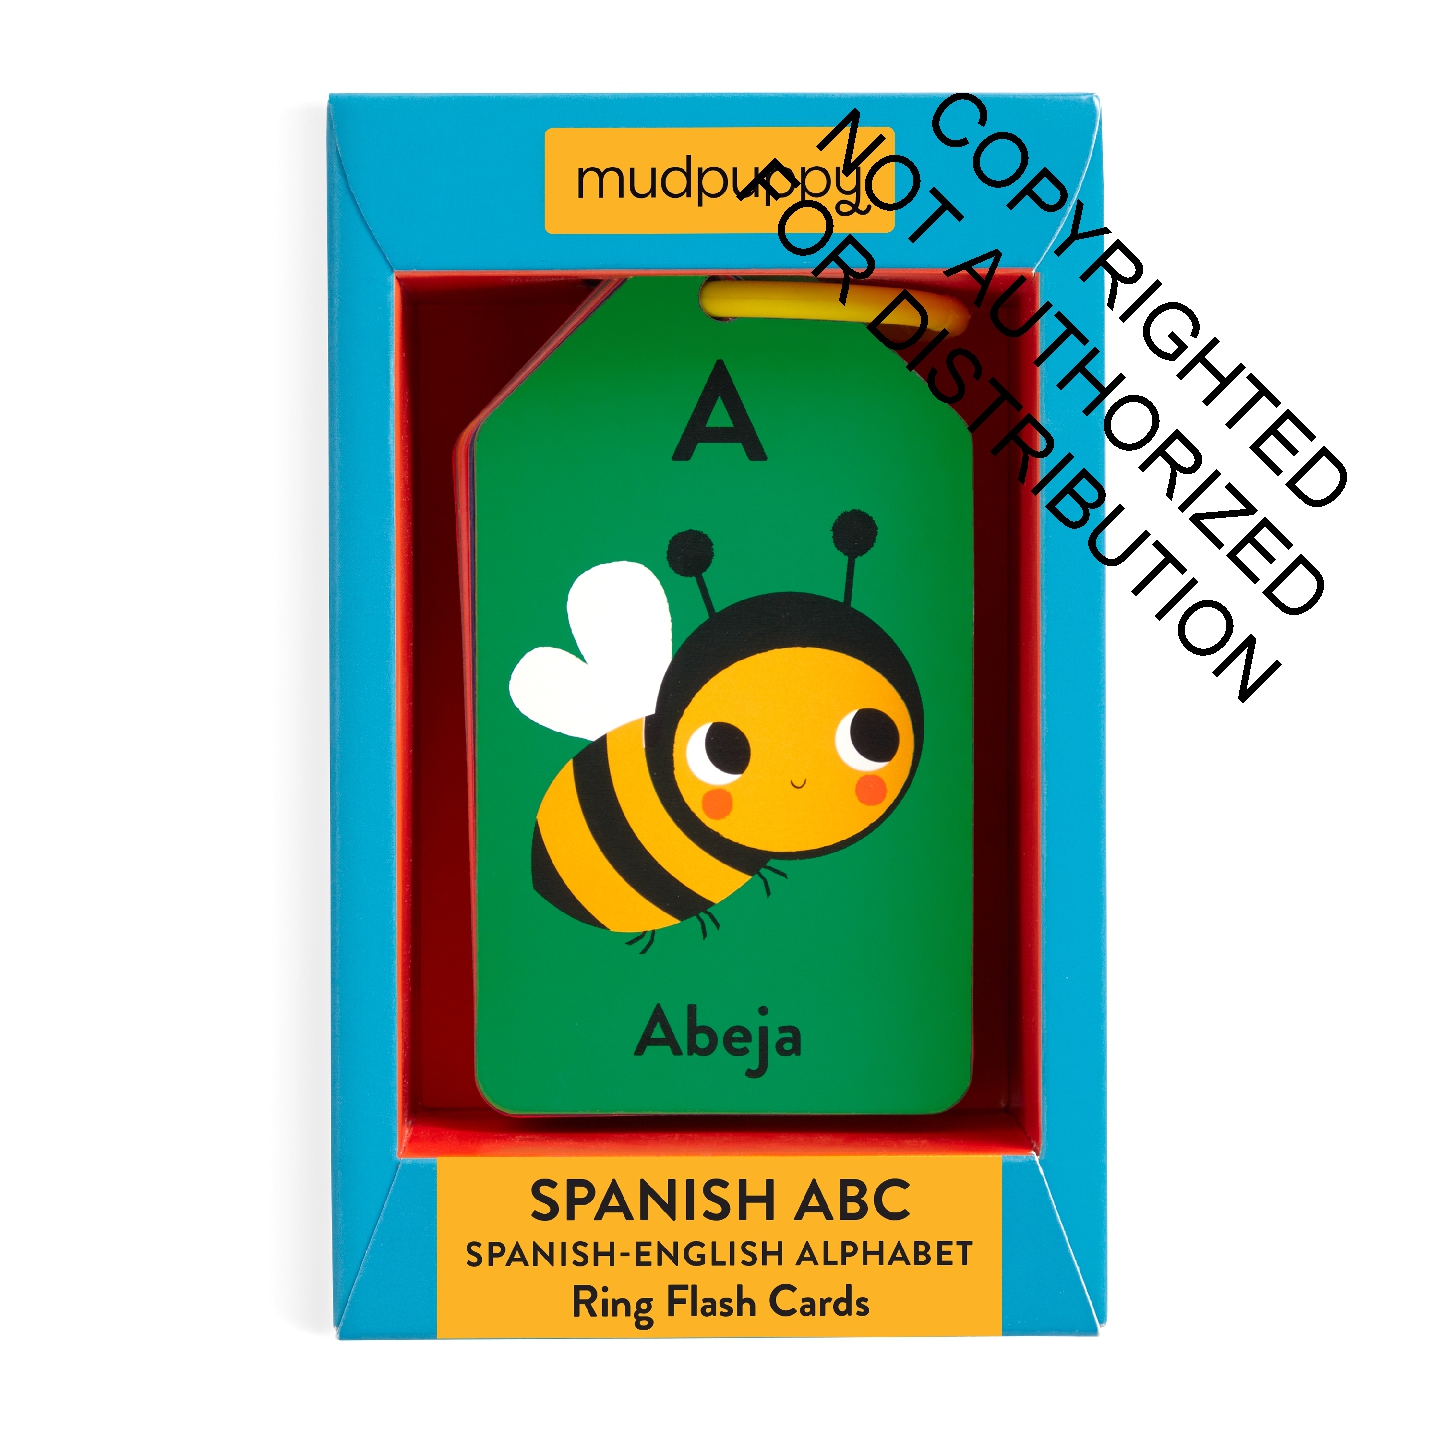 Spanish-English ABC Ring Flash Cards